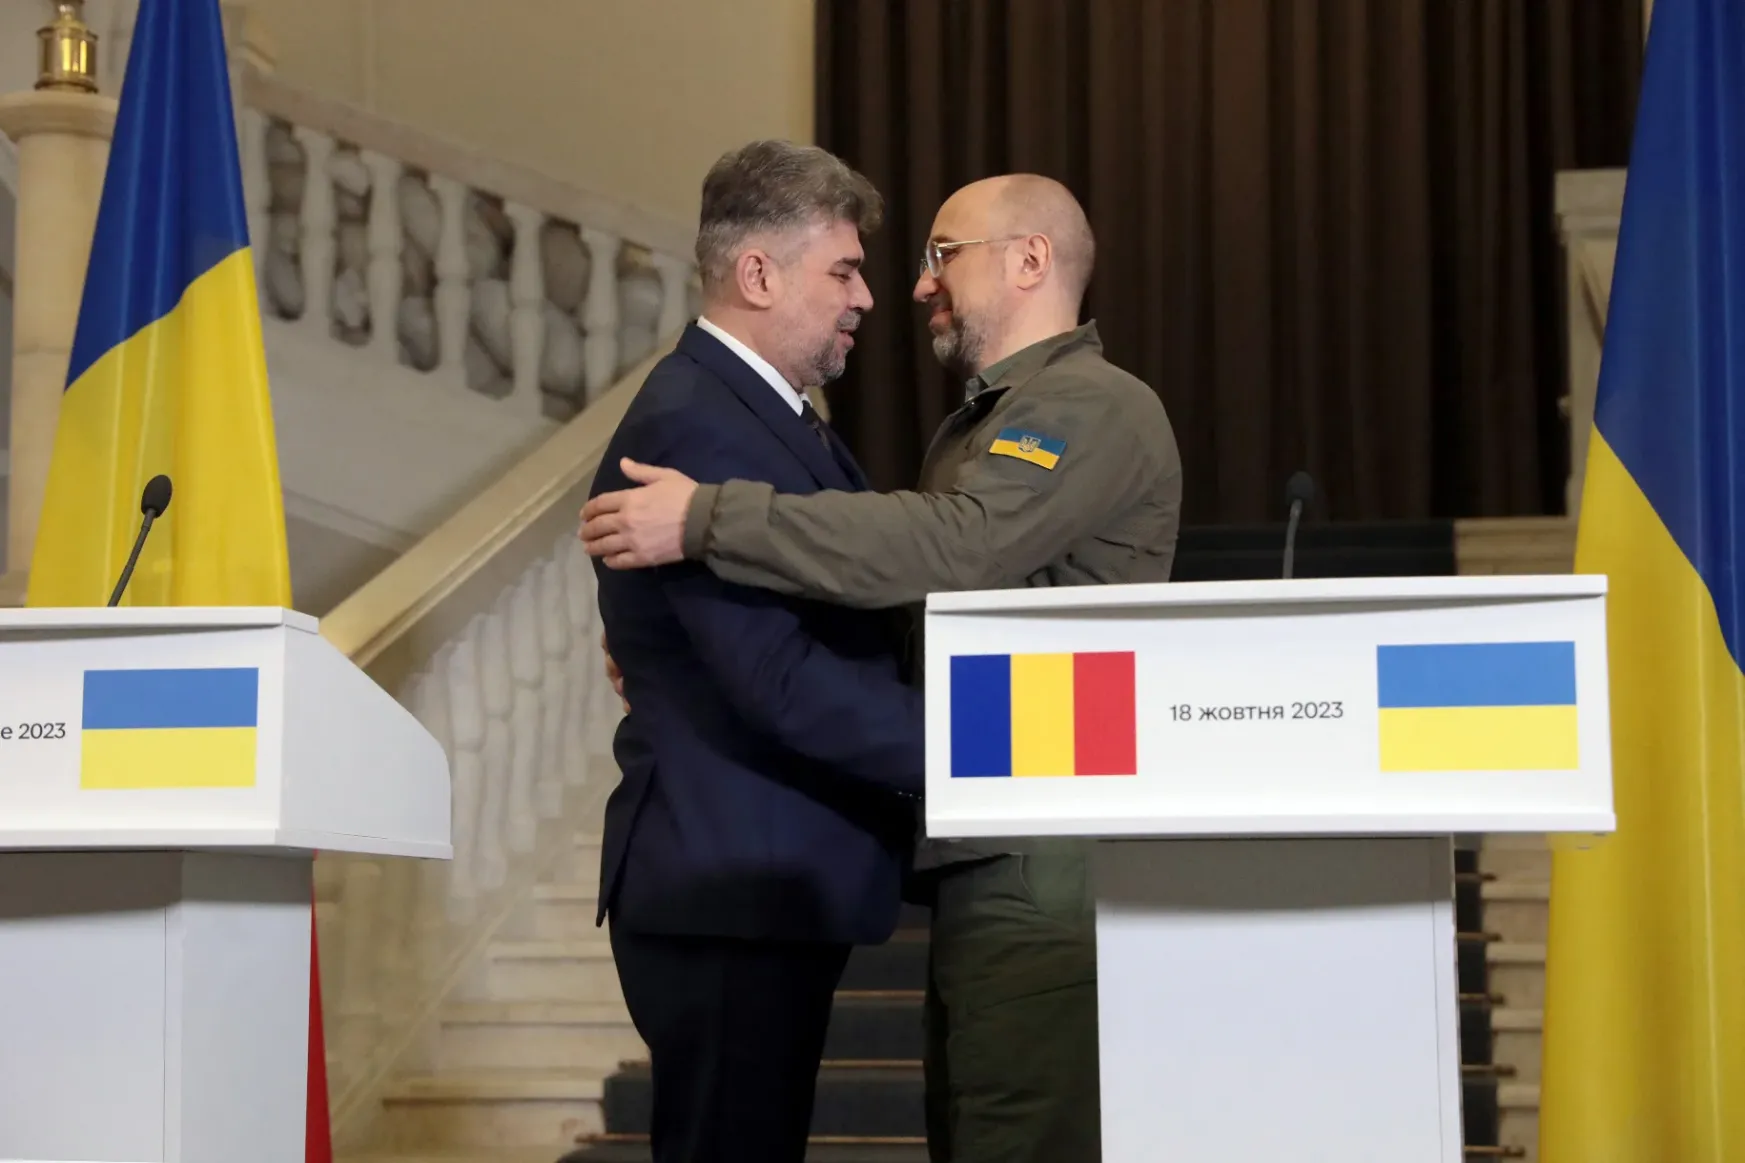 Román-ukrán kormányülés: gabonatranzit, közös határvédelem, új határátkelők